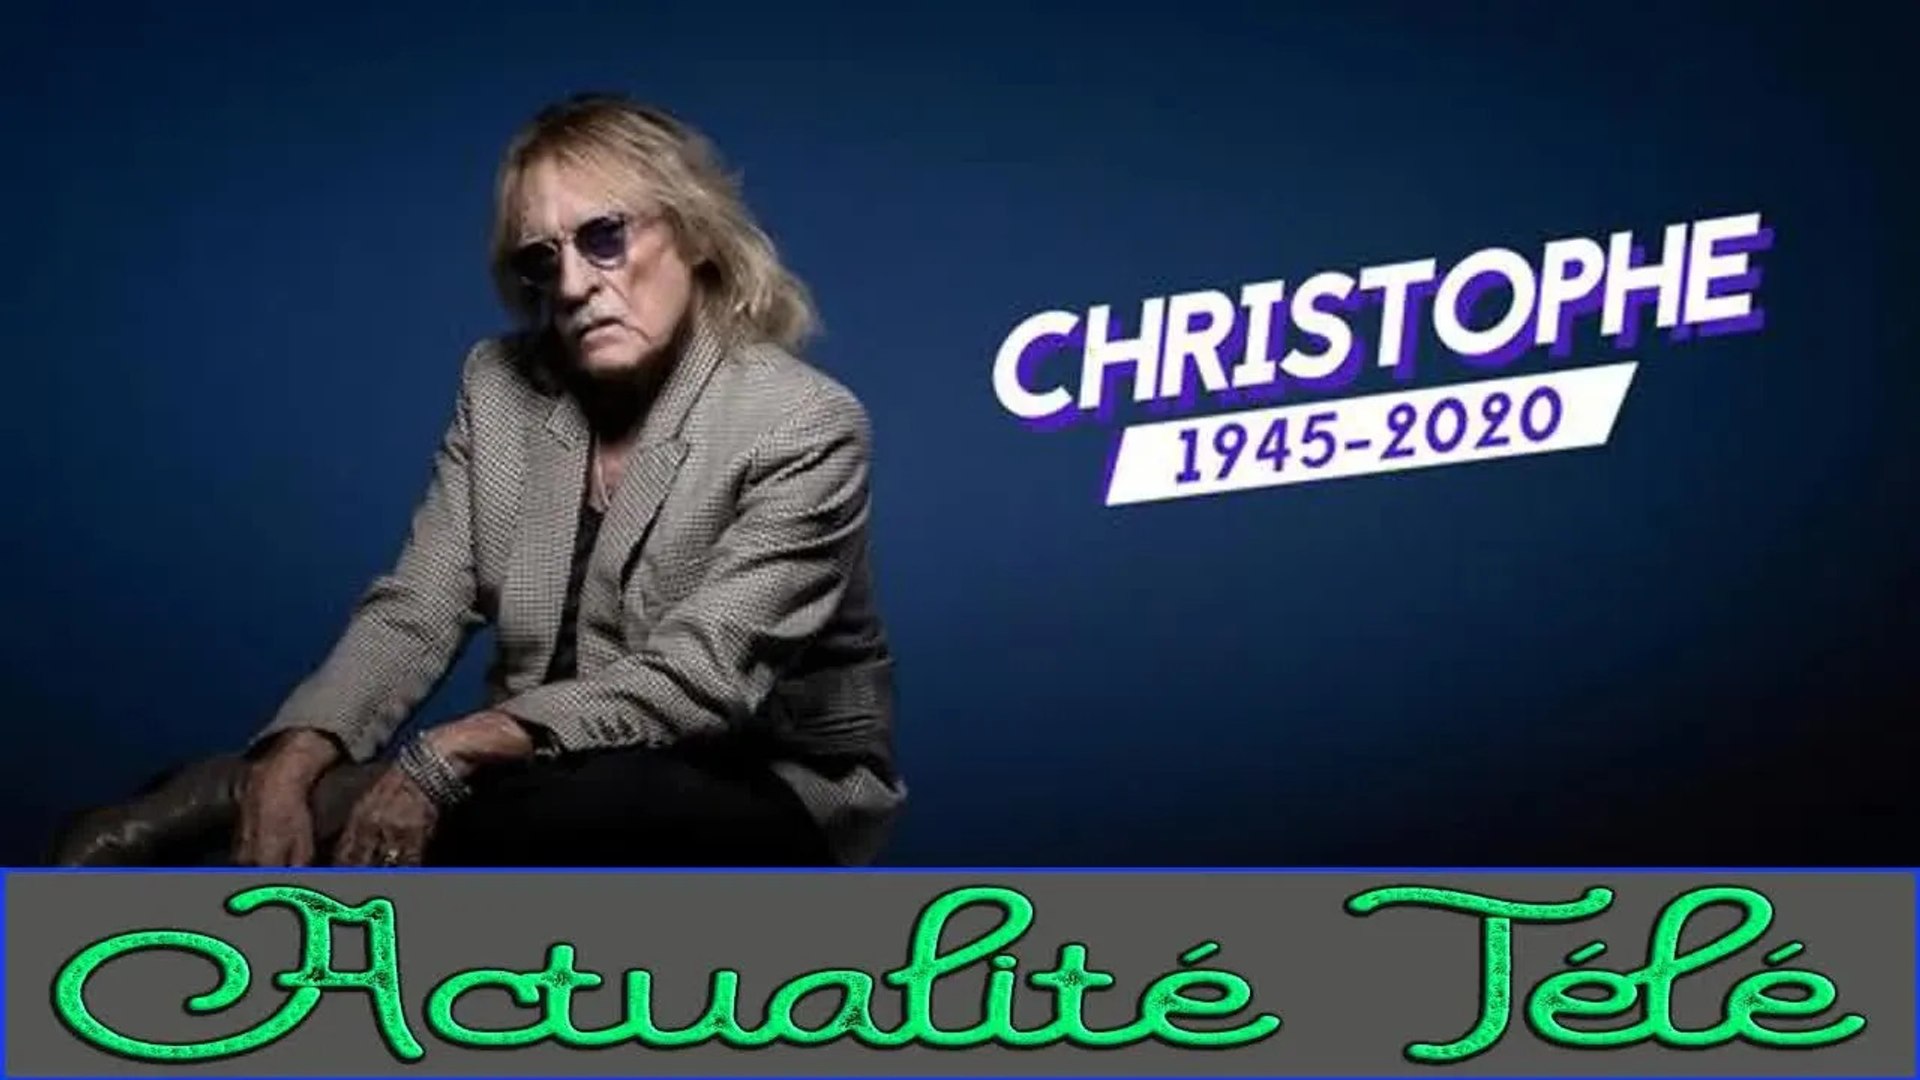 Le chanteur Christophe, inoubliable interprète des Mots Bleus, est décédé  -  - Musiques